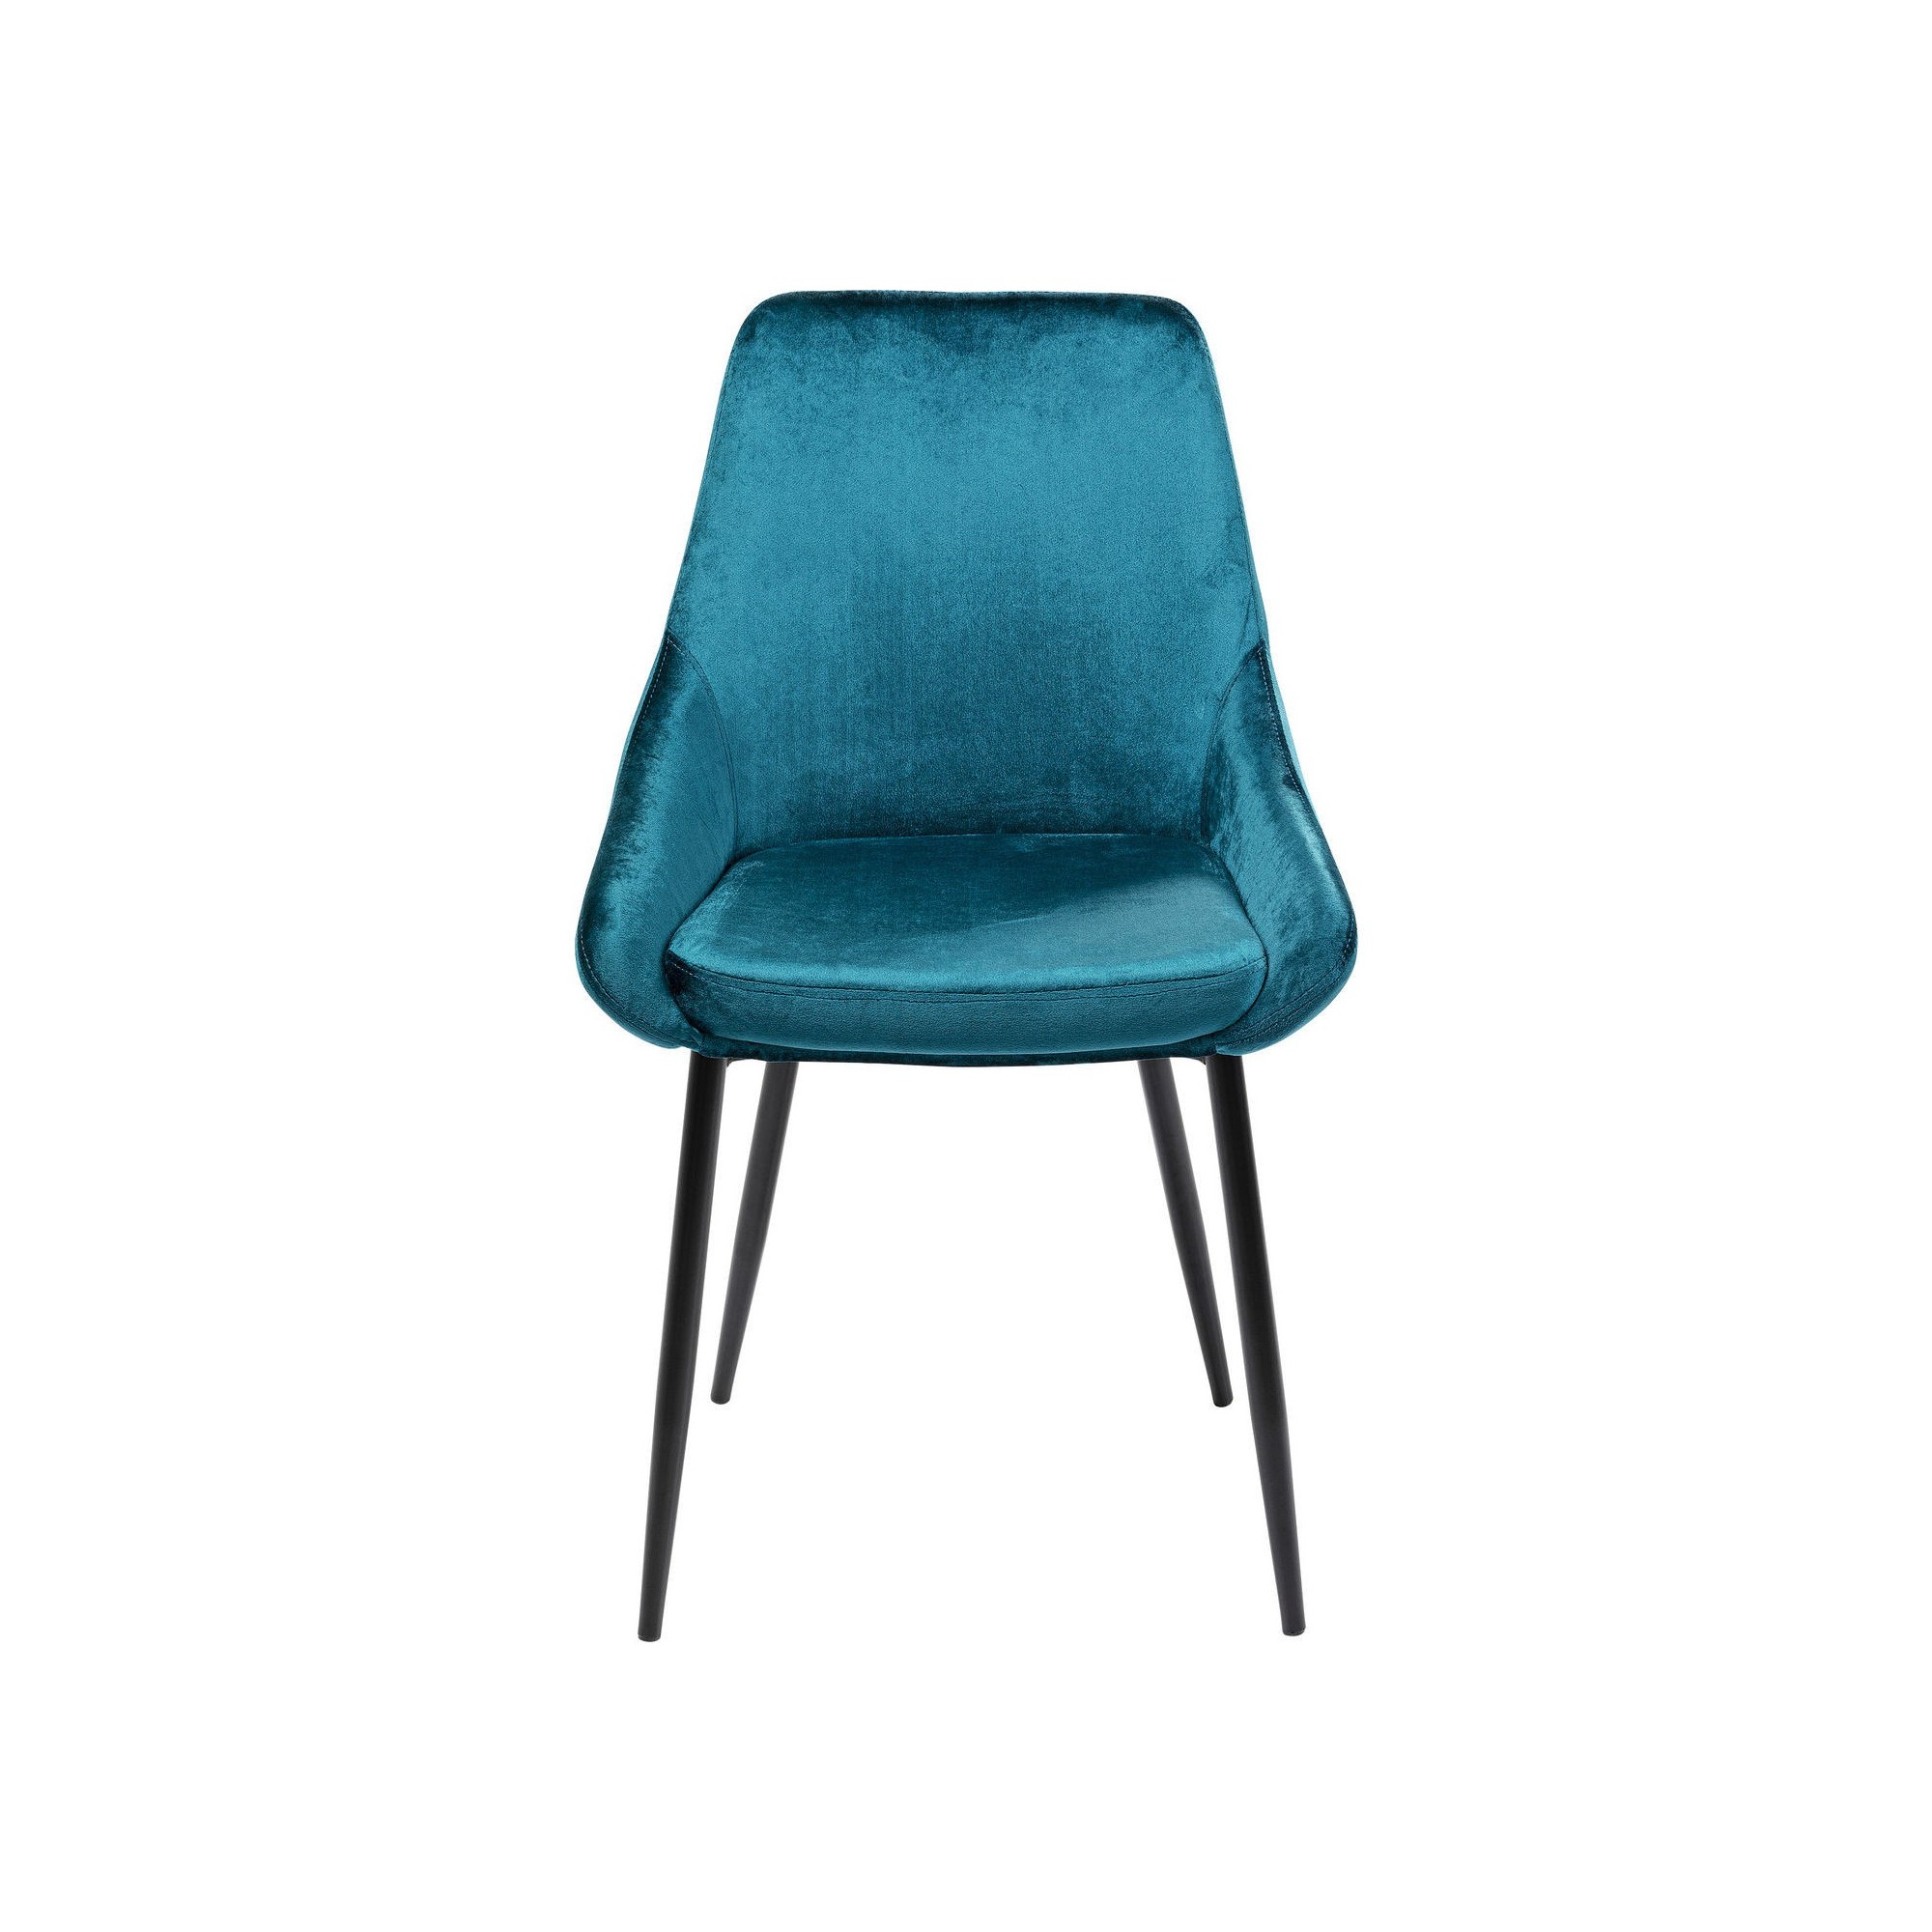 Chair East Side Bluegreen Kare Design